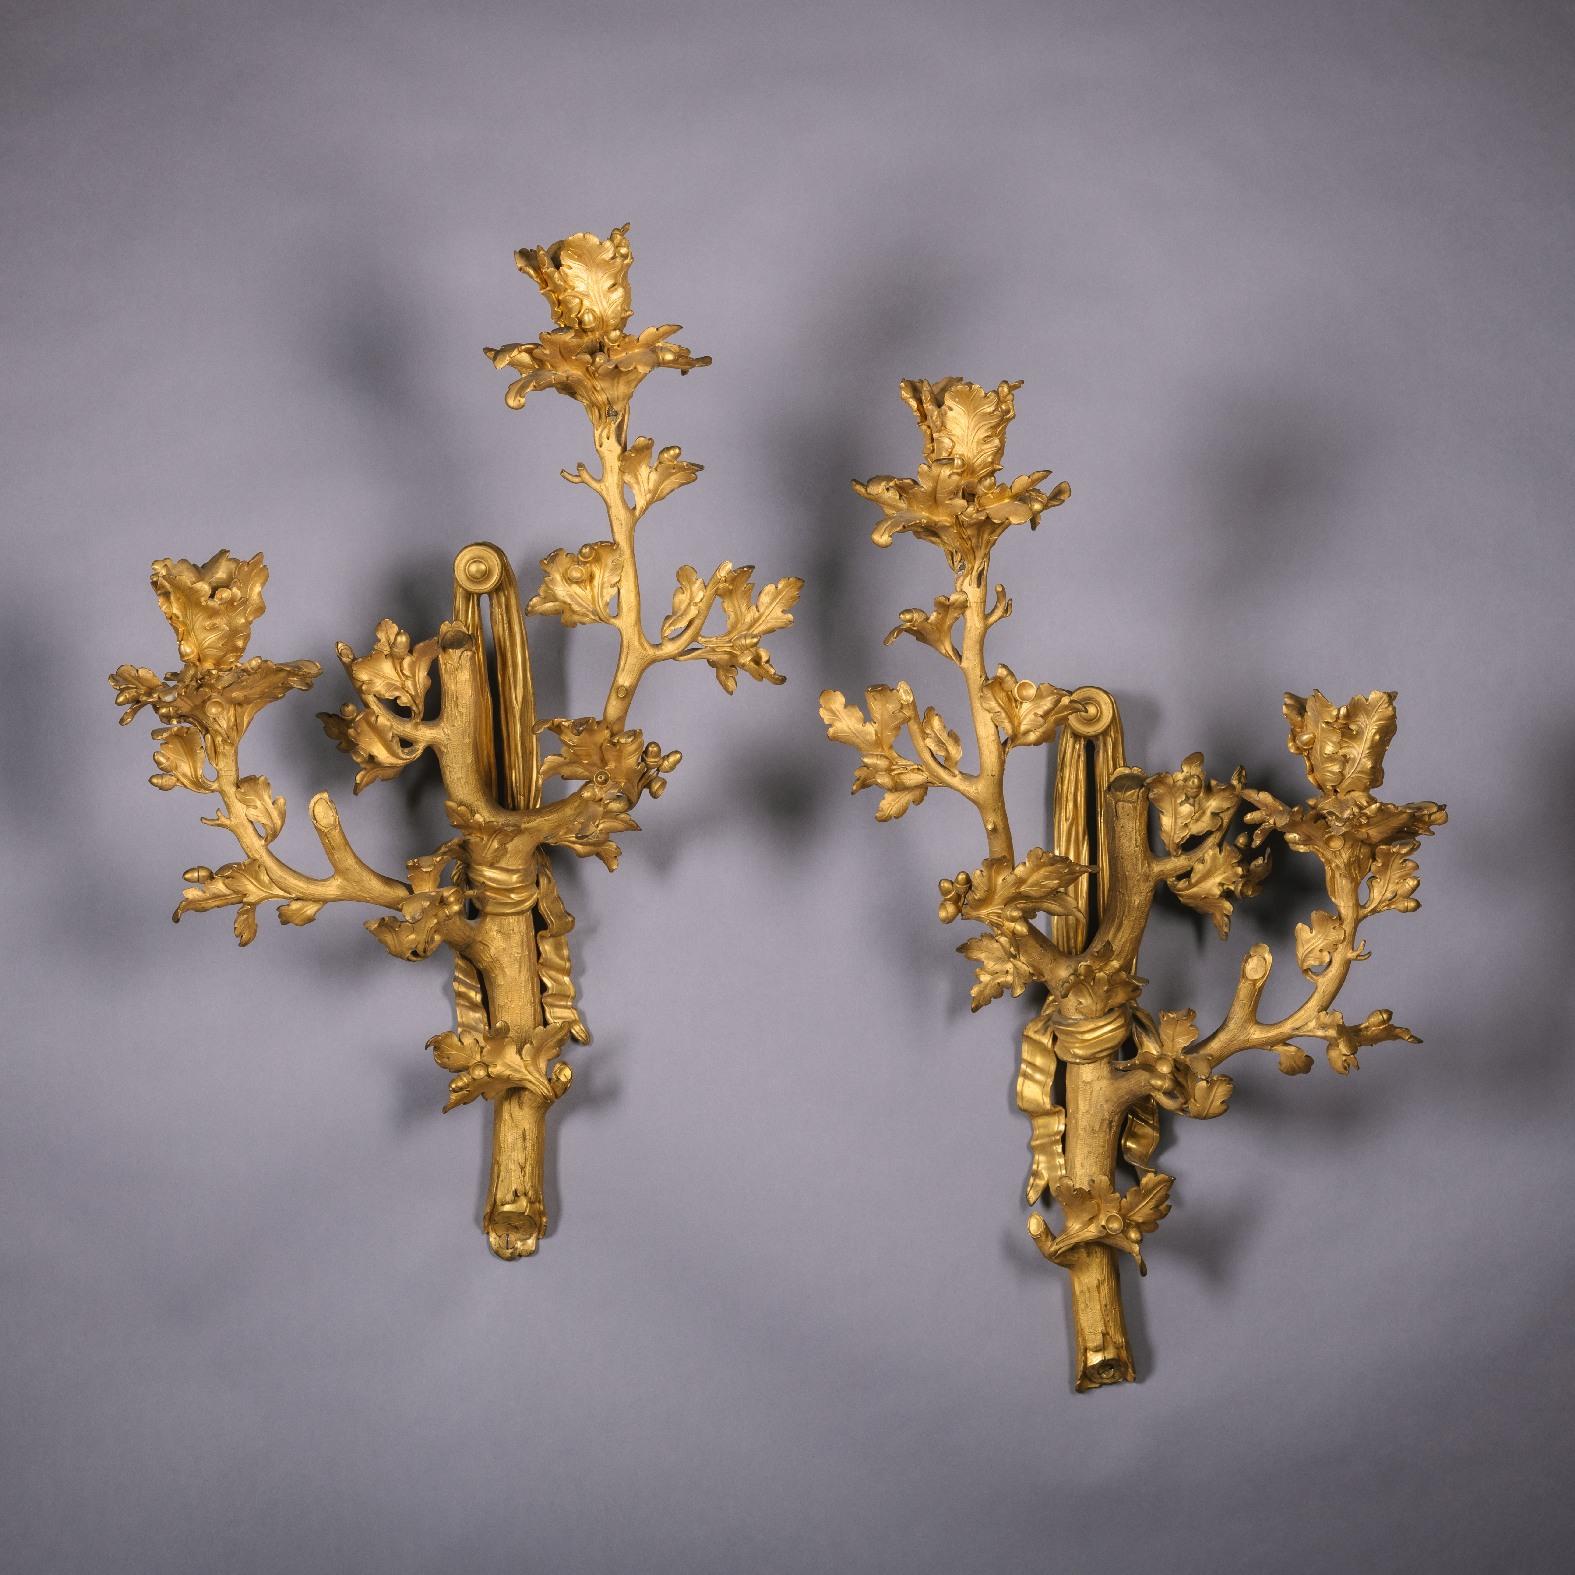 Ein seltenes und höchst ungewöhnliches Paar vergoldeter bronzener Wandapplikationen mit zwei Lampen. 

Frankreich, ca. 1870.

Sie sind im hohen Rokoko-Stil Ludwigs XV. als Zweige aus Eichenlaub und Eicheln modelliert, die an mit Bändern gebundenen